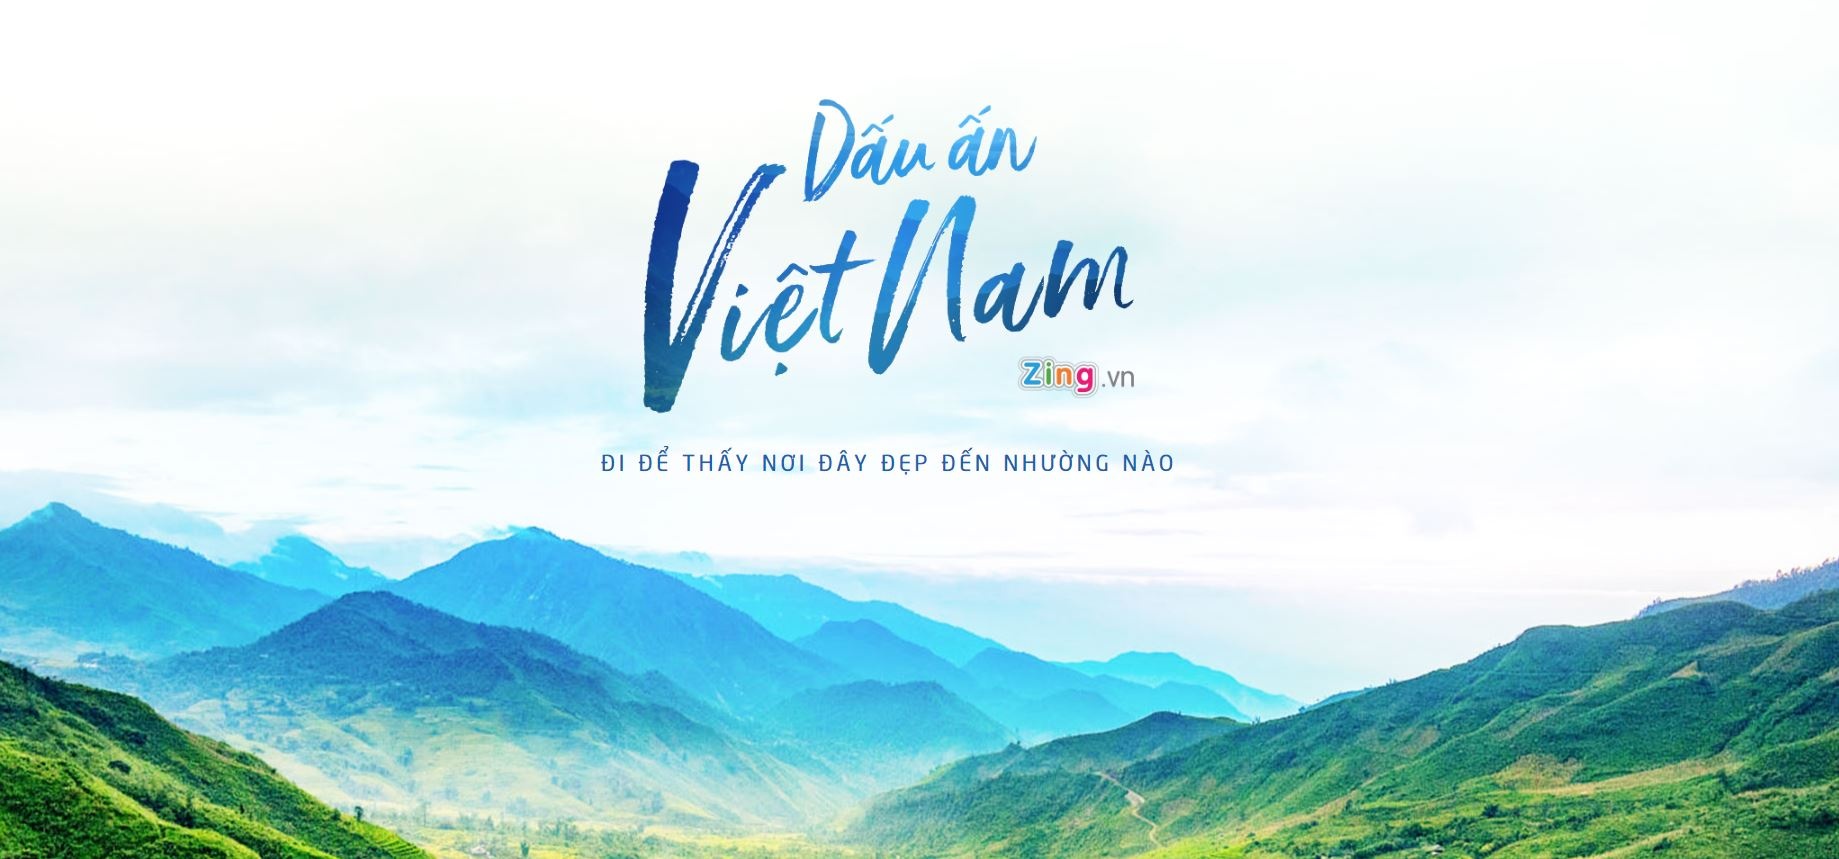 Dau an Viet Nam anh 1